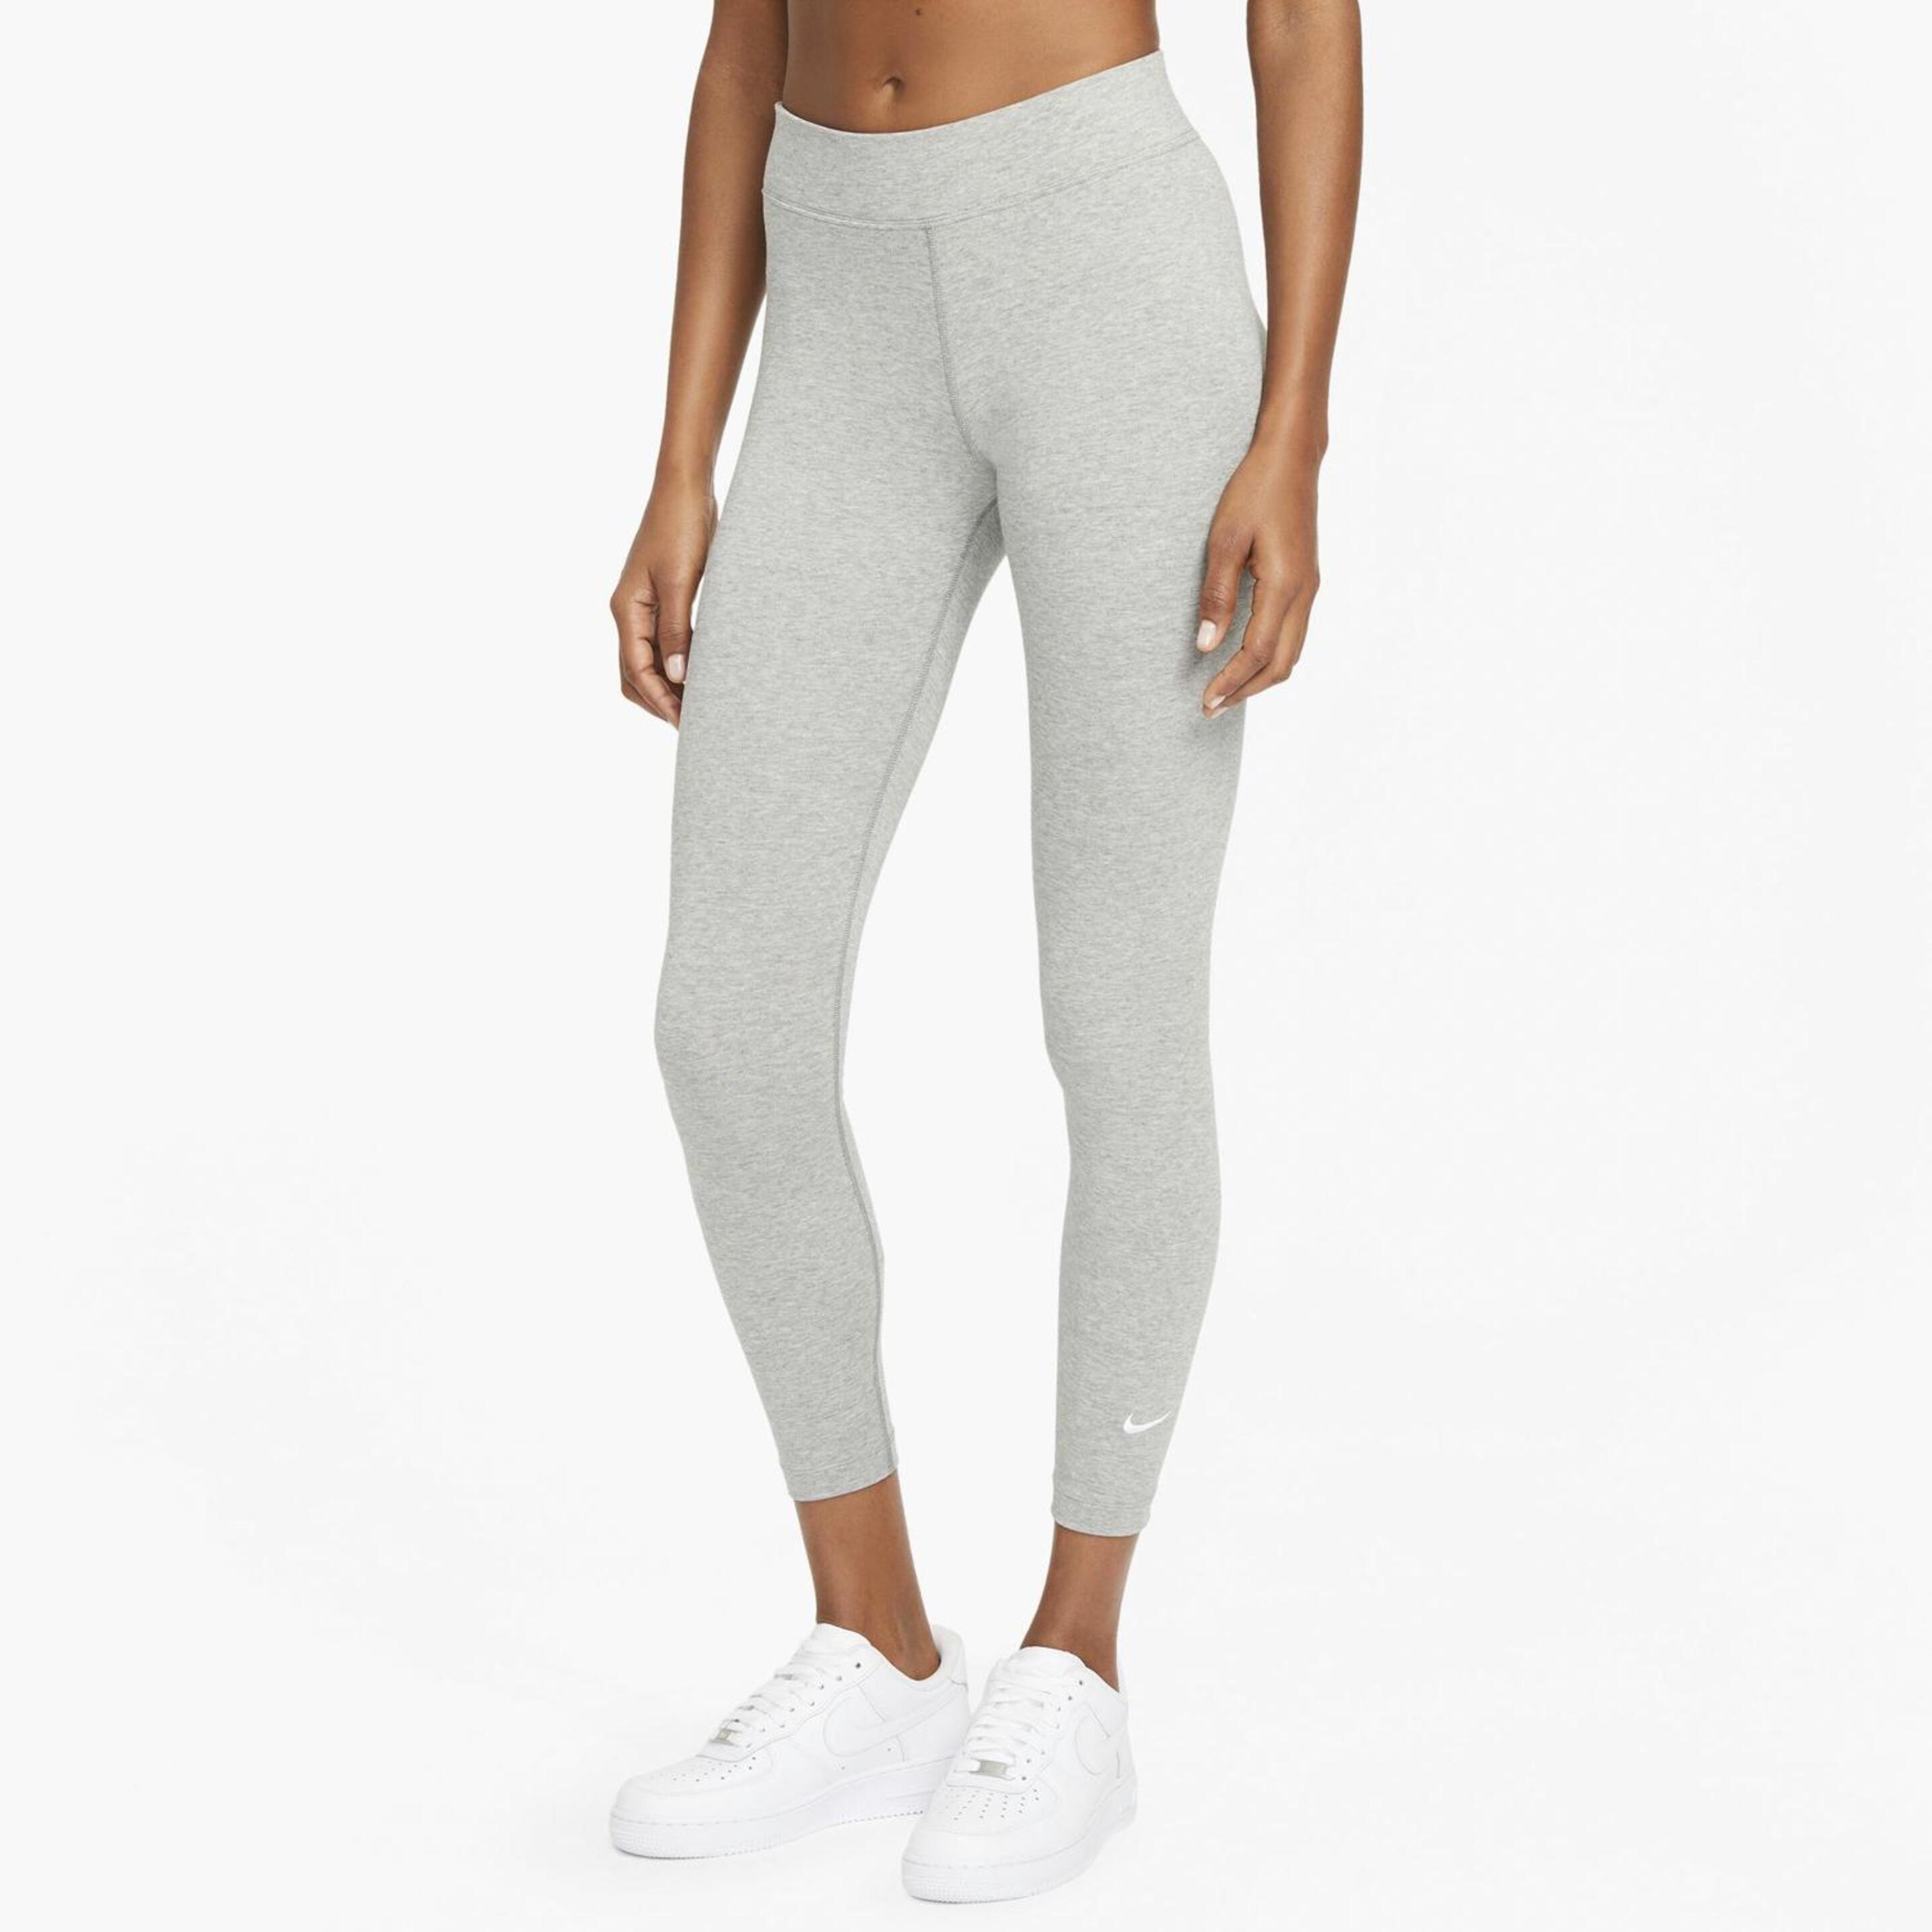 Nike Sportswear Essential - gris - Leggins Mujer